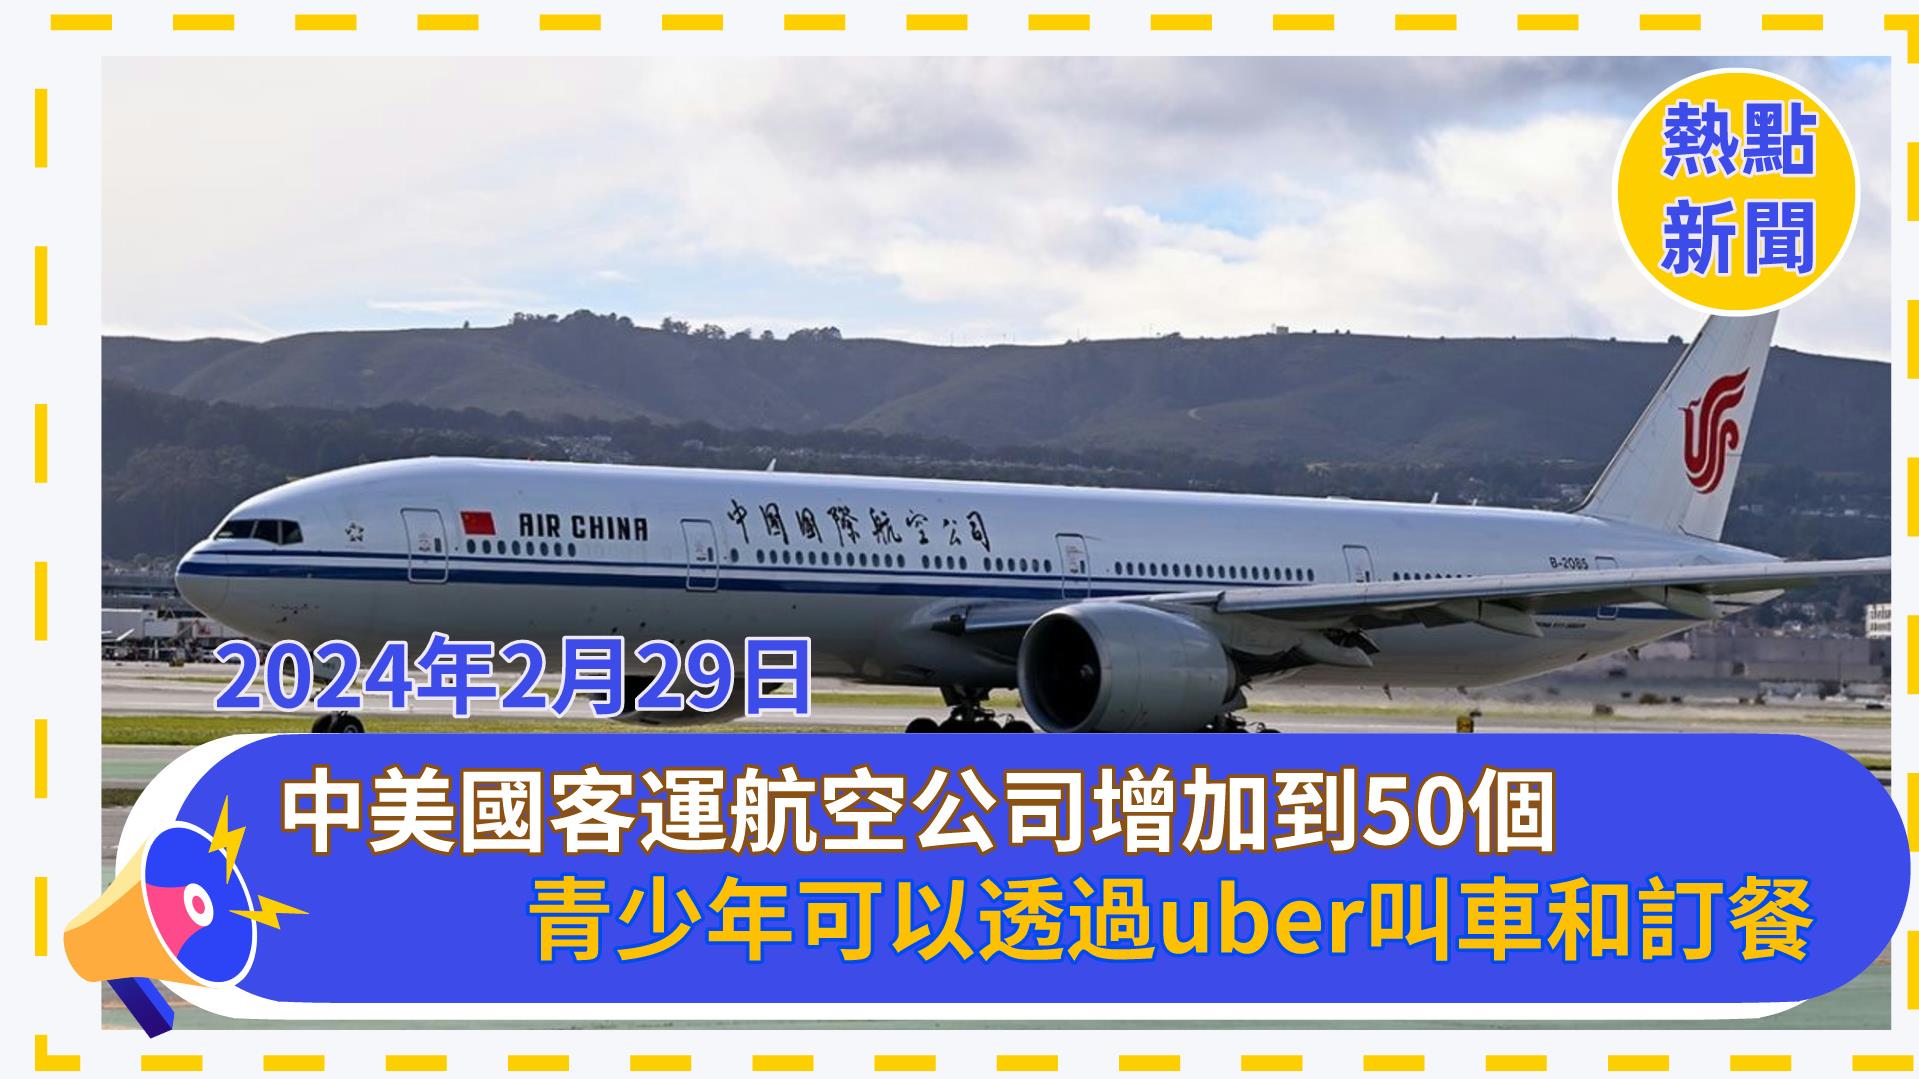 美國運輸部允許中國客運航空公司增加到50個